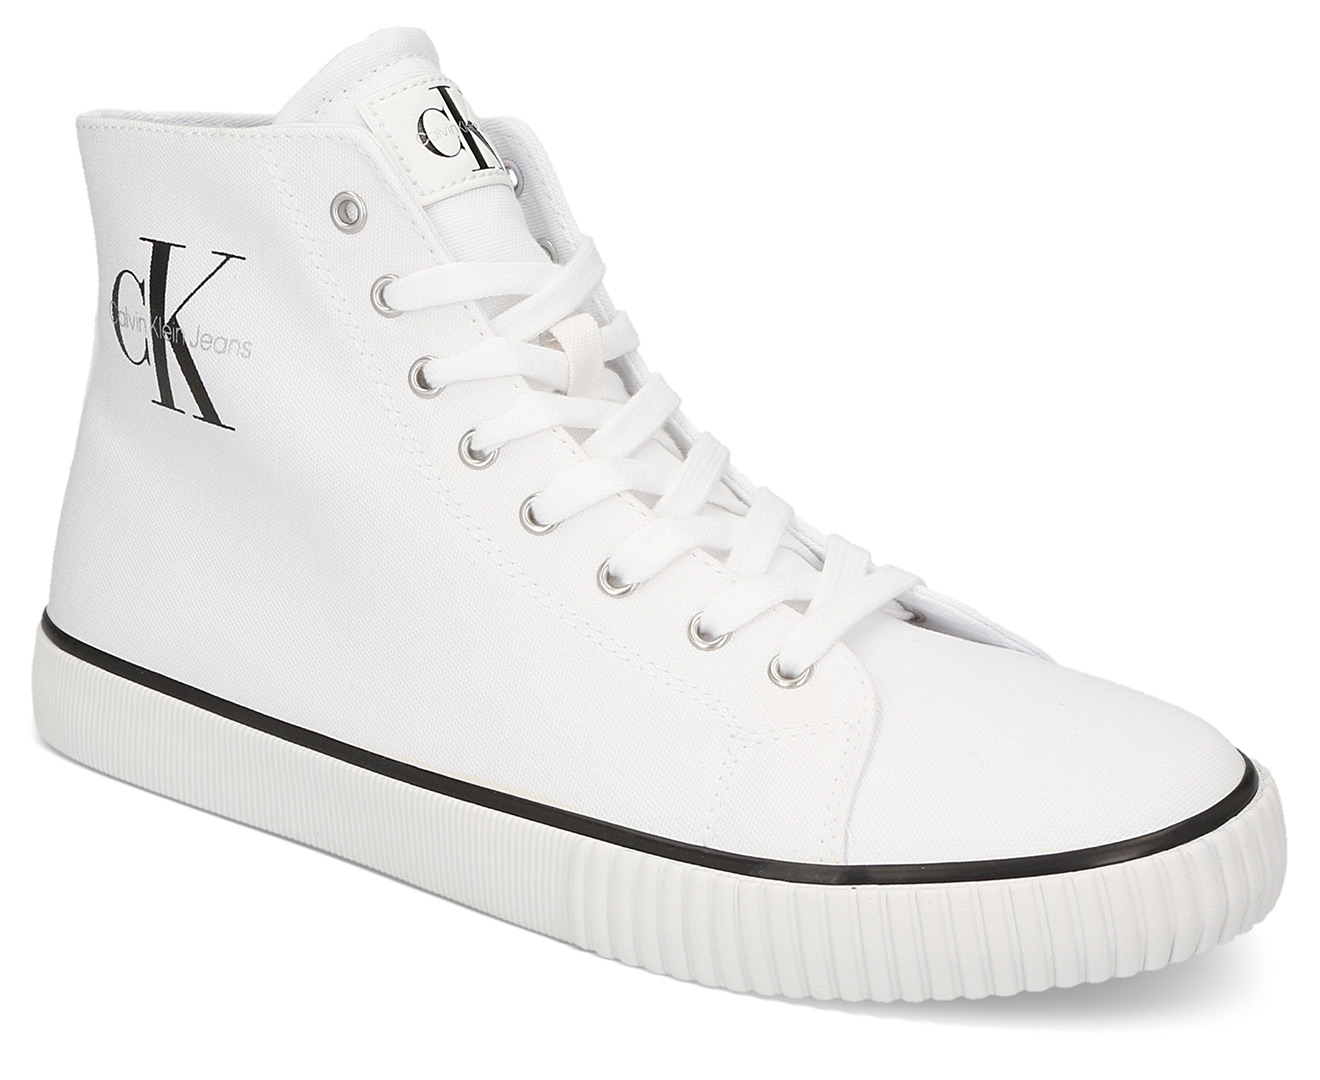 Calvin Klein Jeans Men's Oita Sneakers - White/Multi 